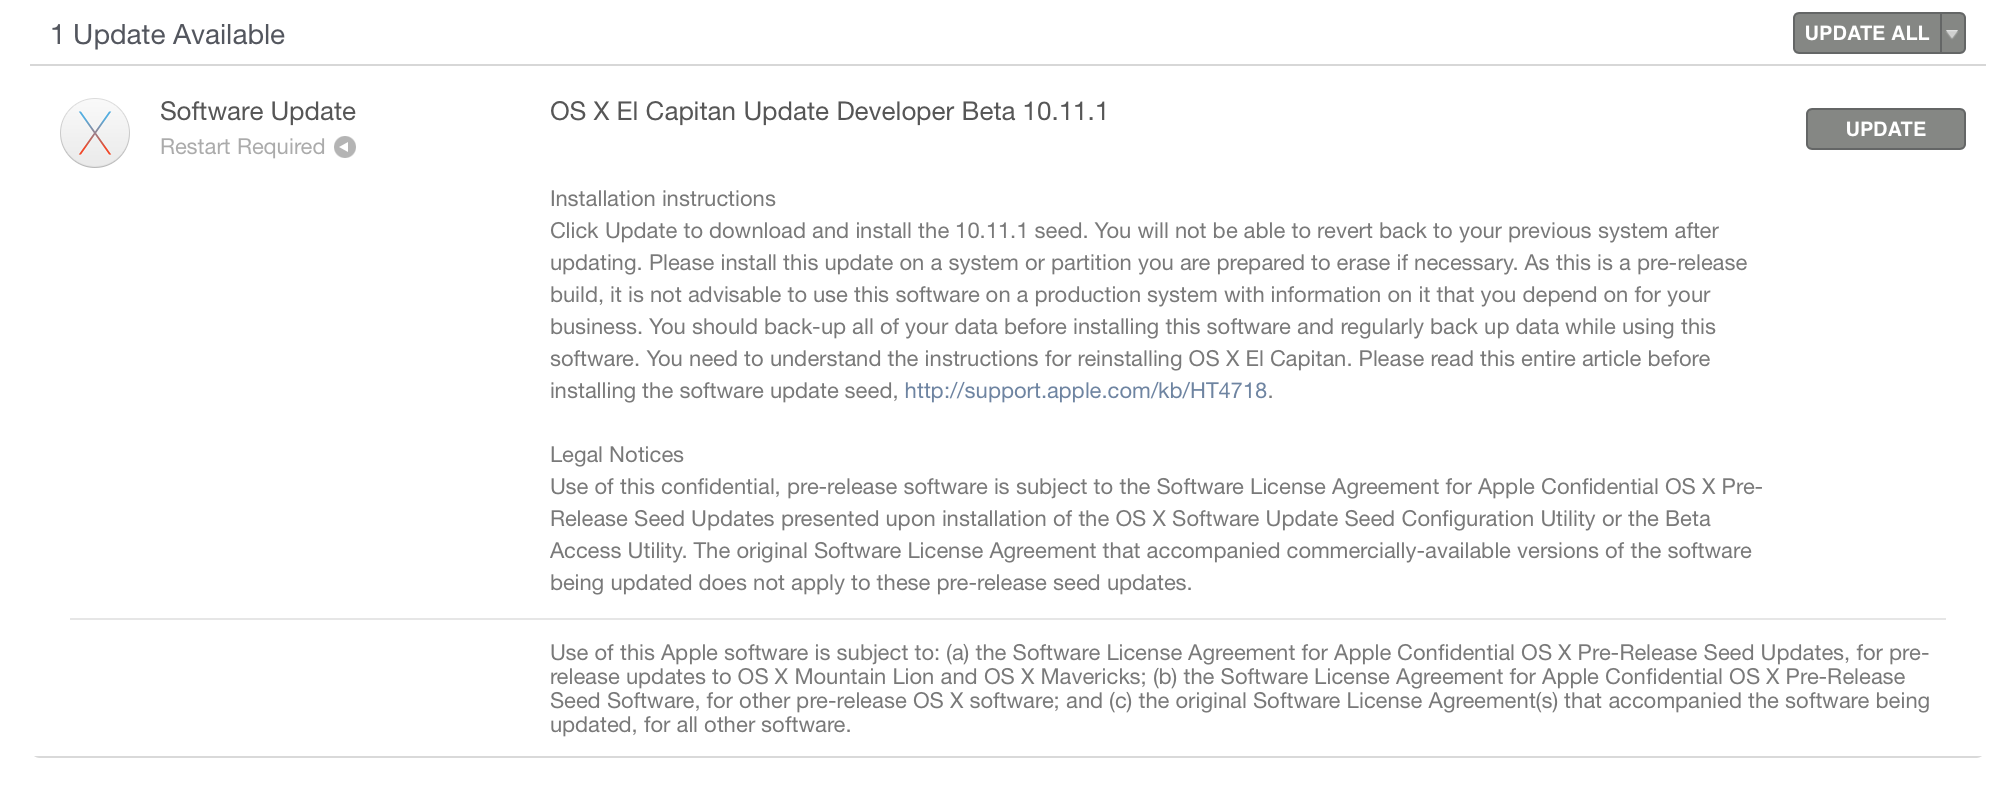 OS X El Capitan 10.11.1 beta 4